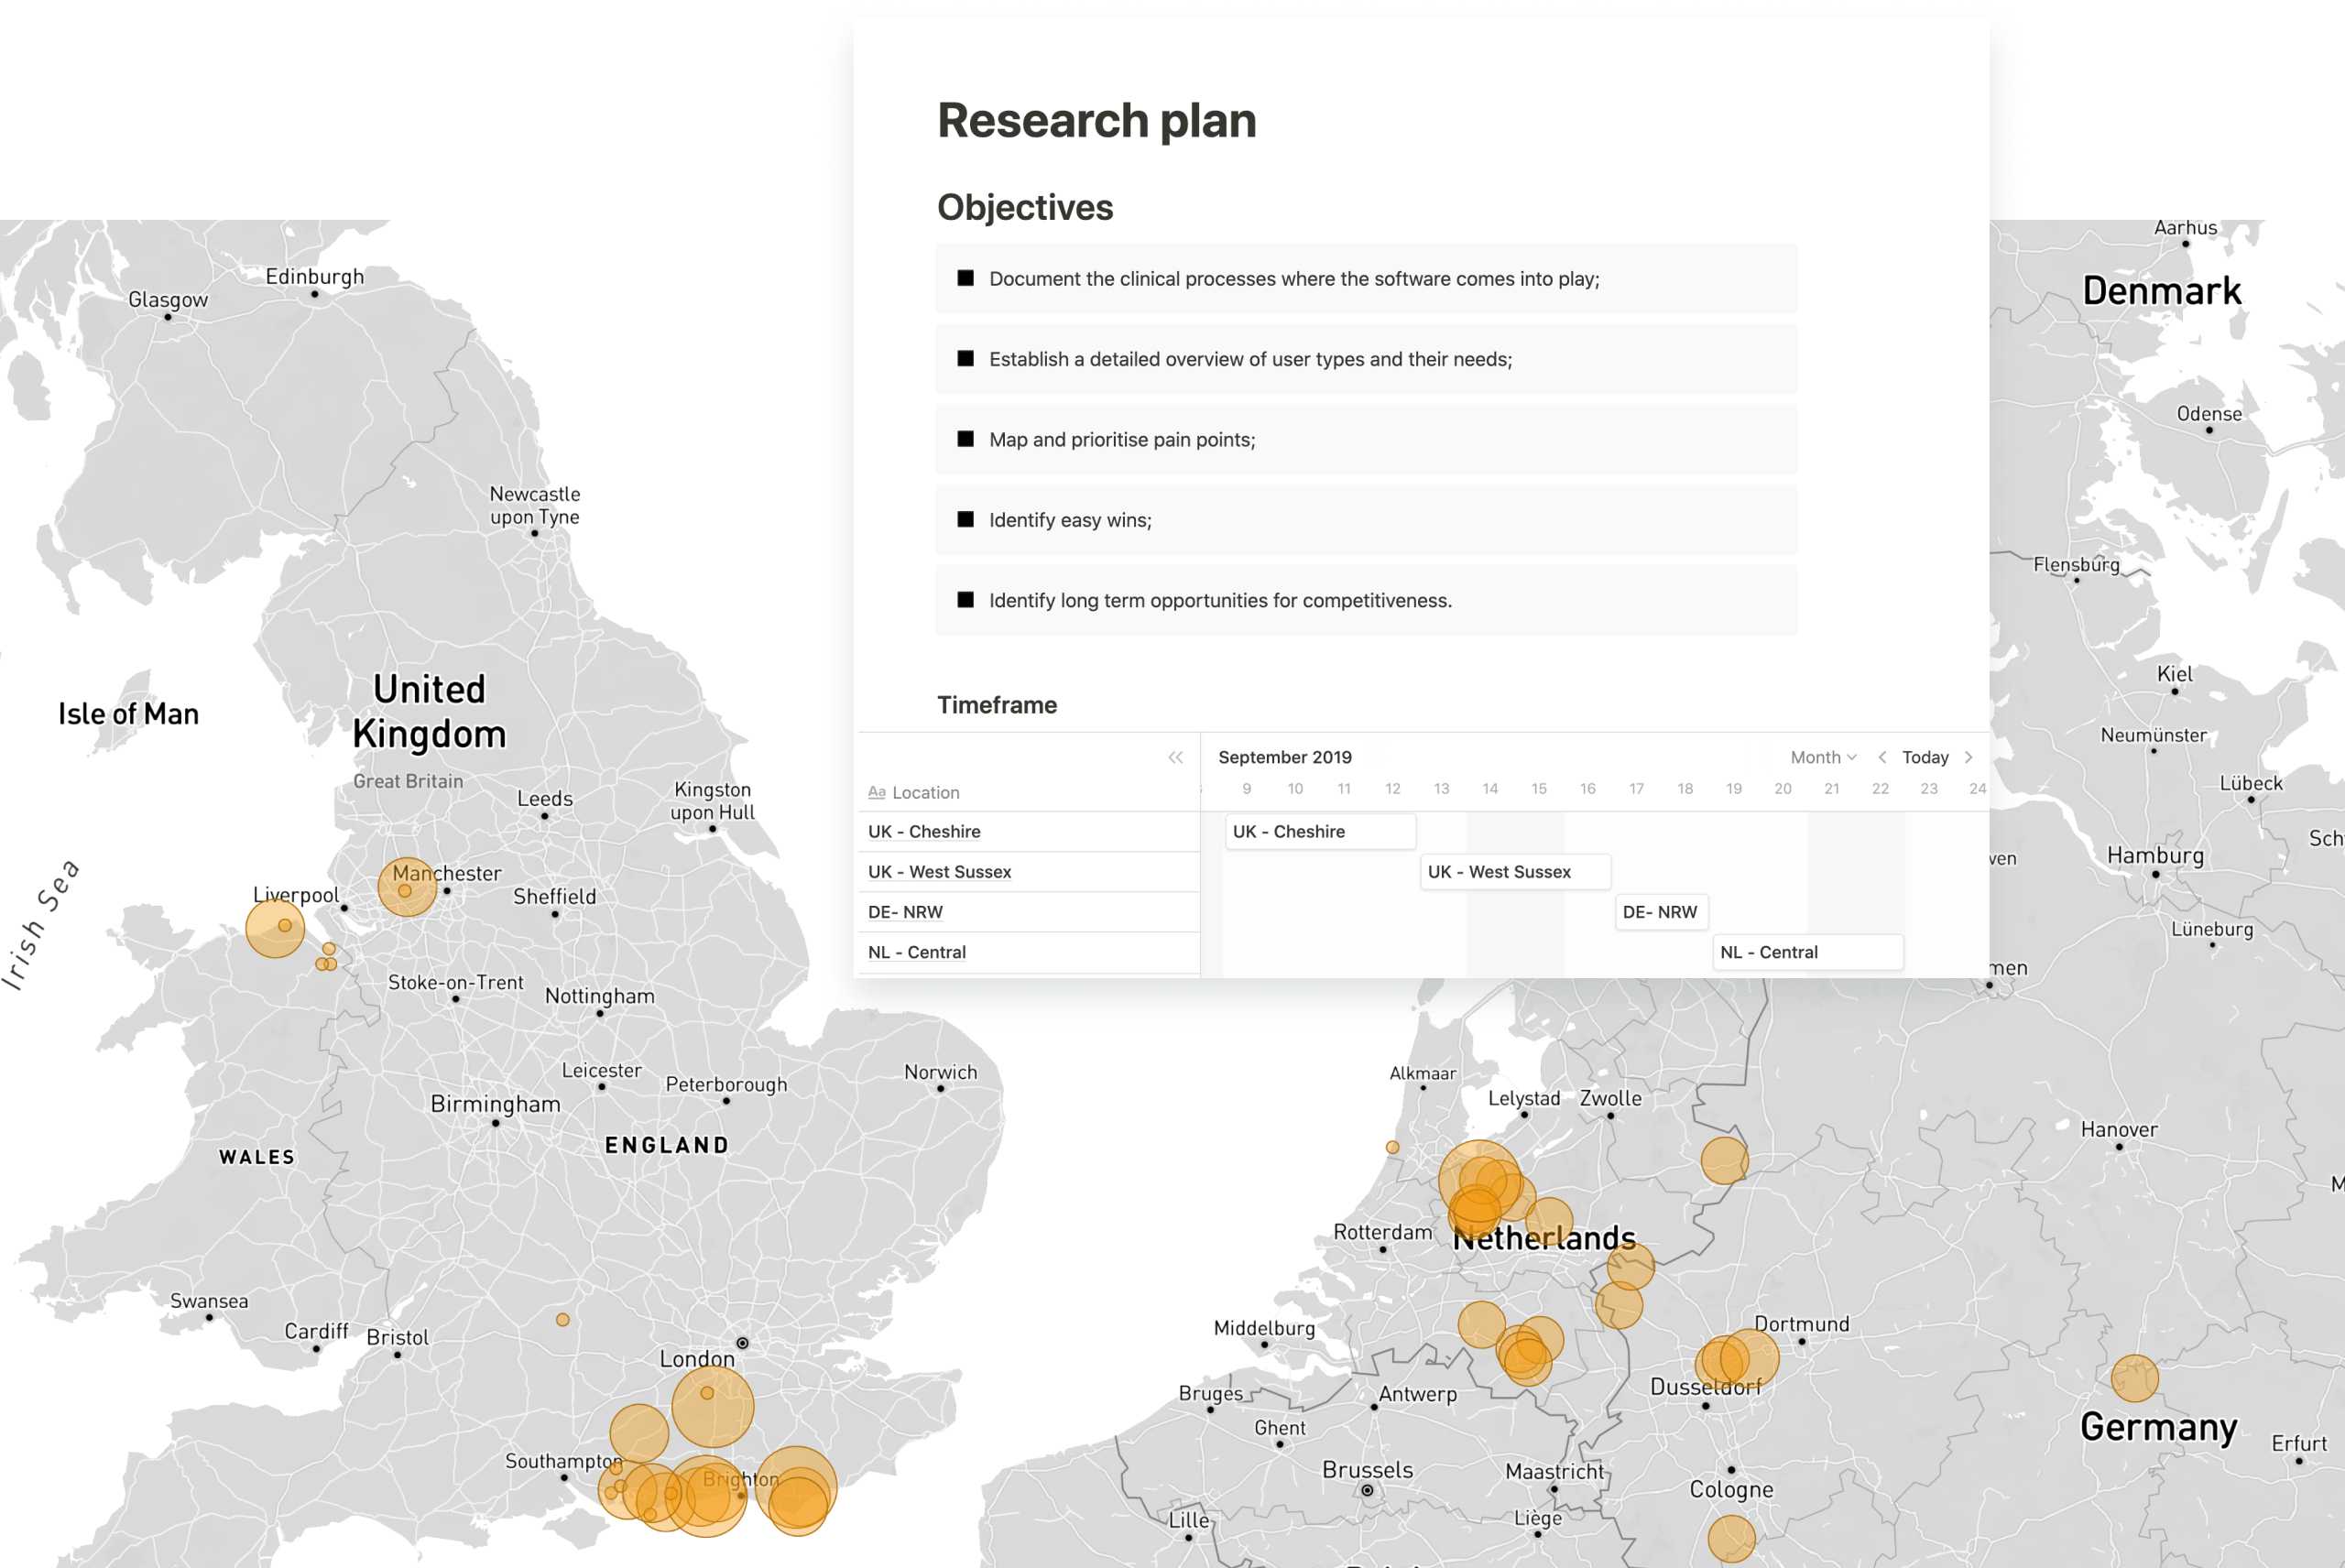 Mappa del Regno Unito e della Germania con evidenziate le località di ricerca degli utenti